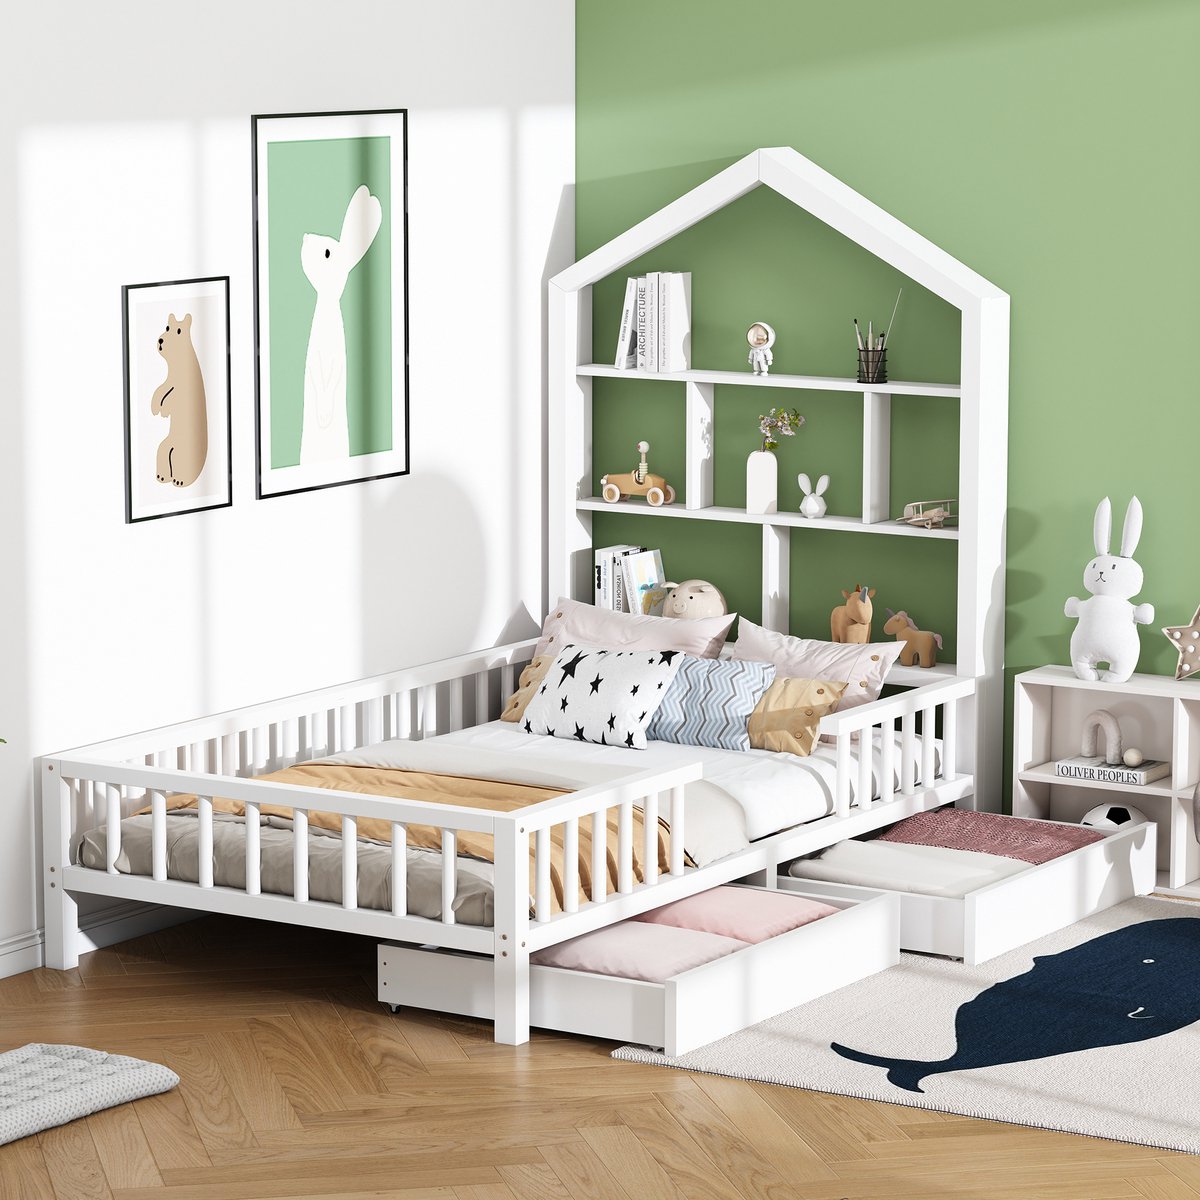 Huisbed kinderbed 200x90 cm - multifunctioneel bed met boekenplank met valbeveiliging - massief houten kinderbed witte lades met lattenbodem voor jongens en meisjes